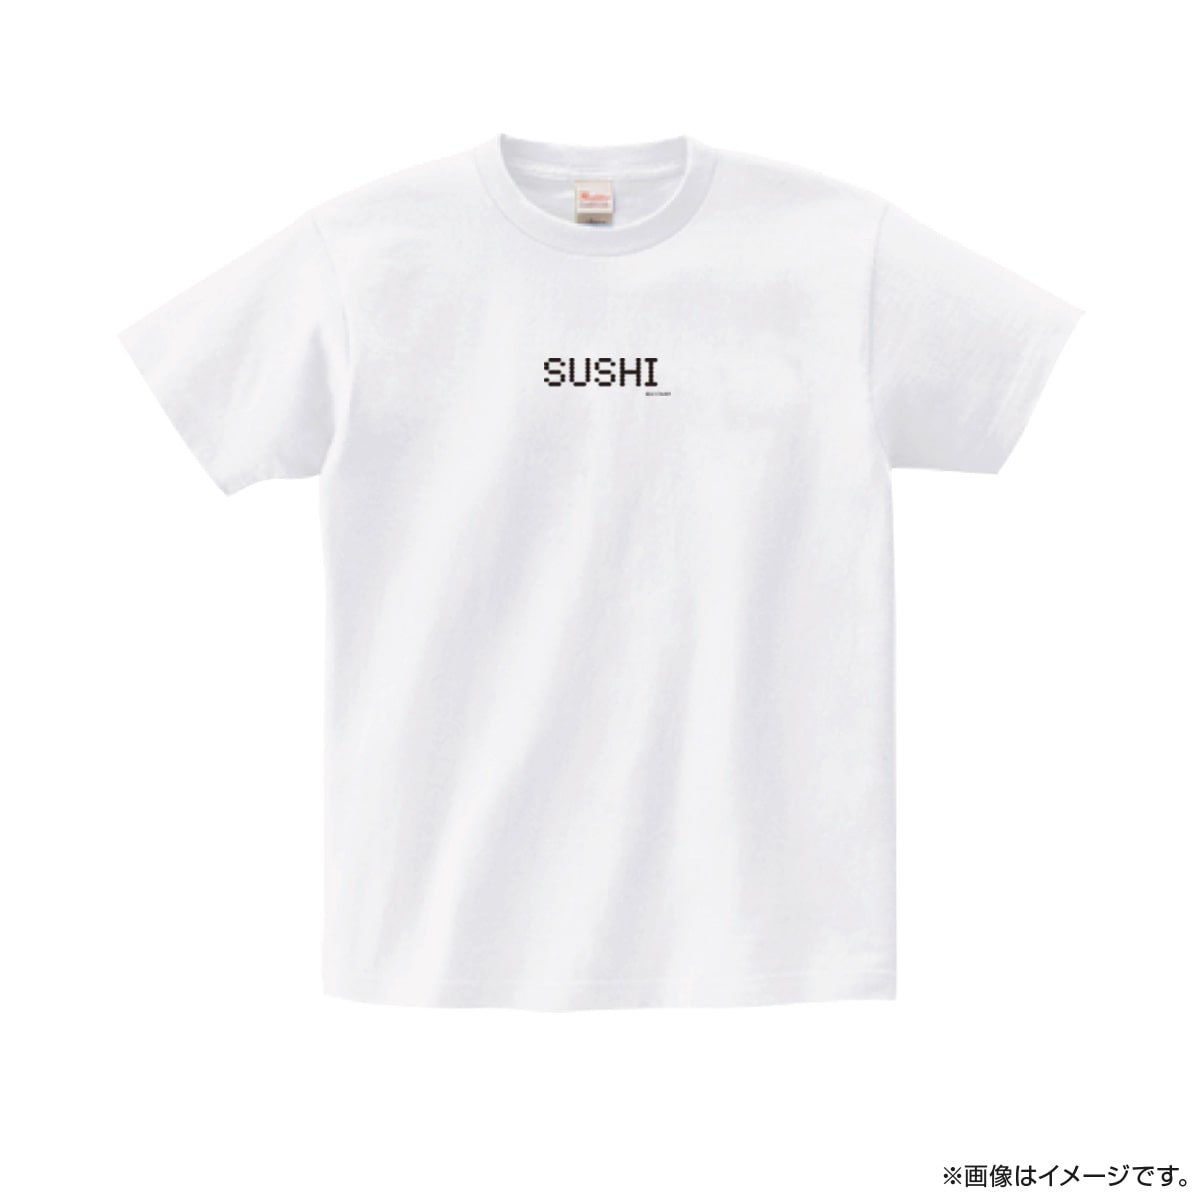 みなと商事コインランドリー Tシャツ（SUSHI）